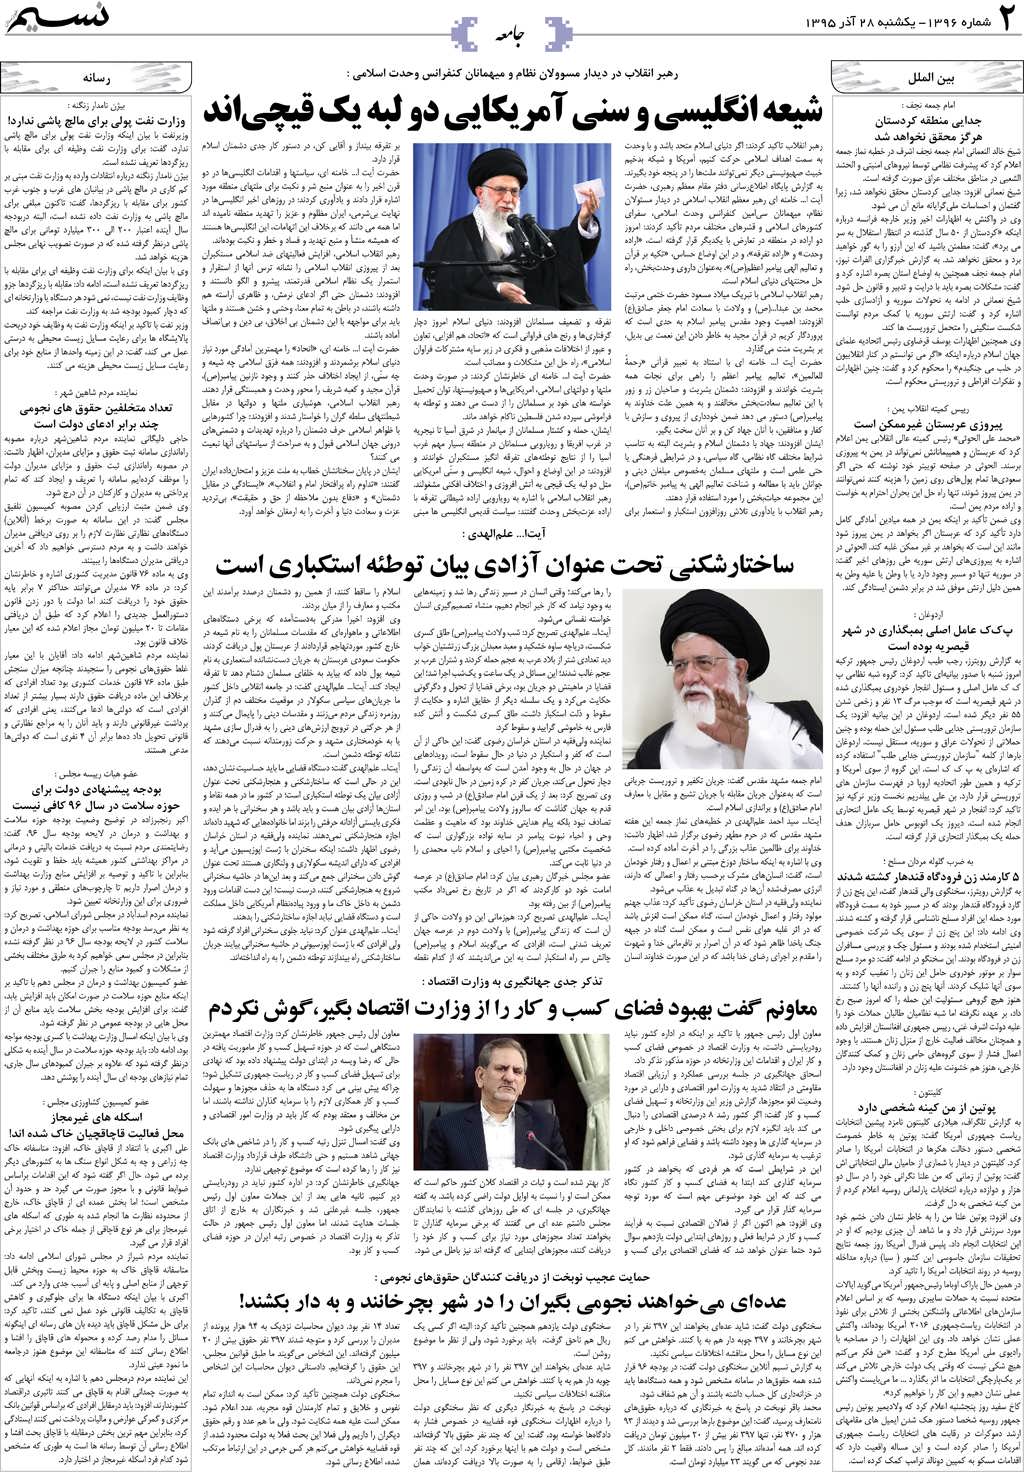 صفحه جامعه روزنامه نسیم شماره 1396